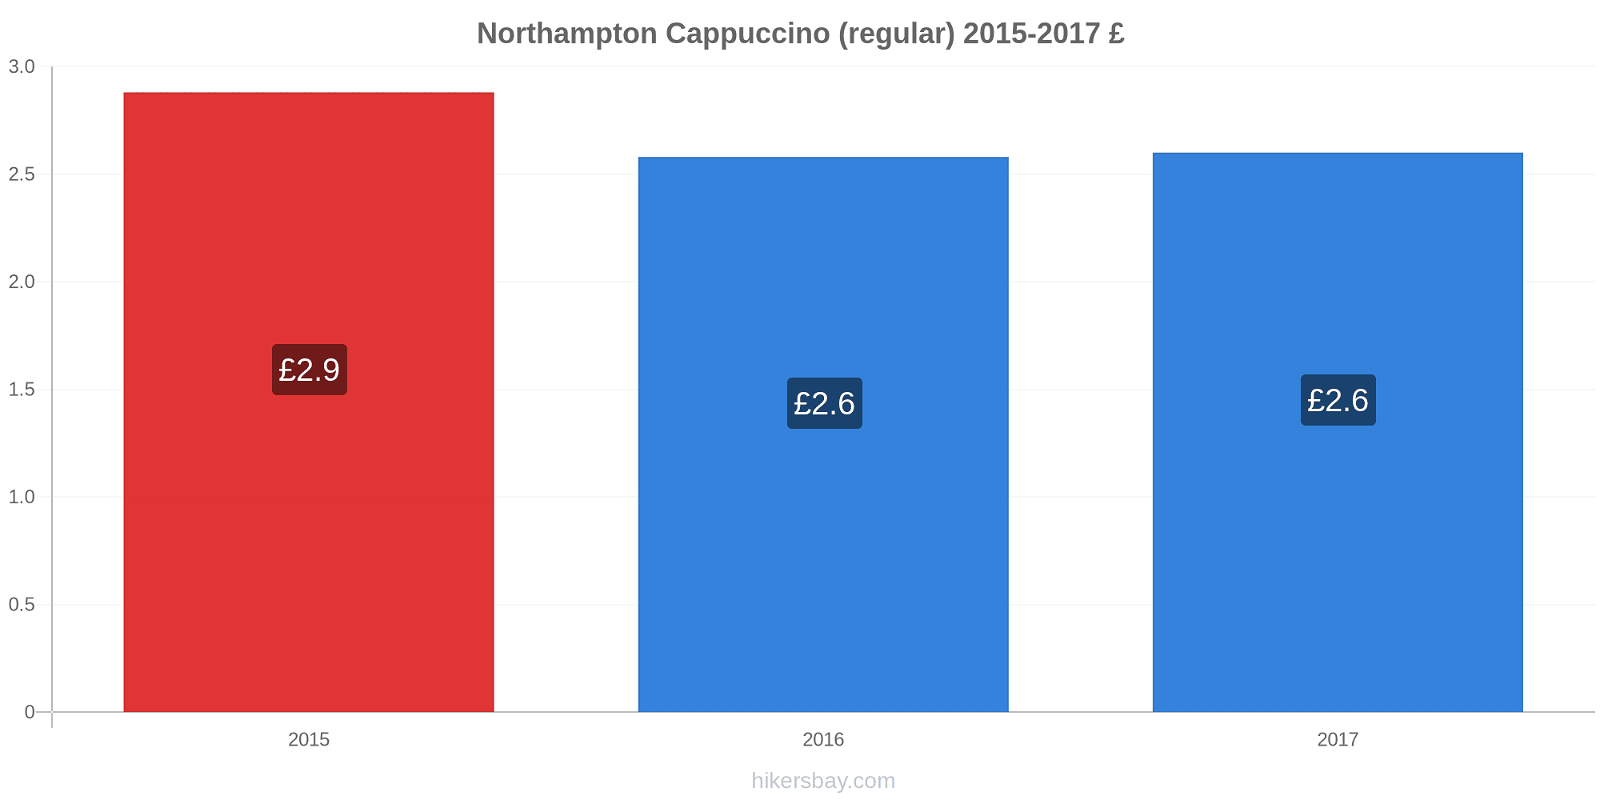 Northampton price changes Cappuccino (regular) hikersbay.com